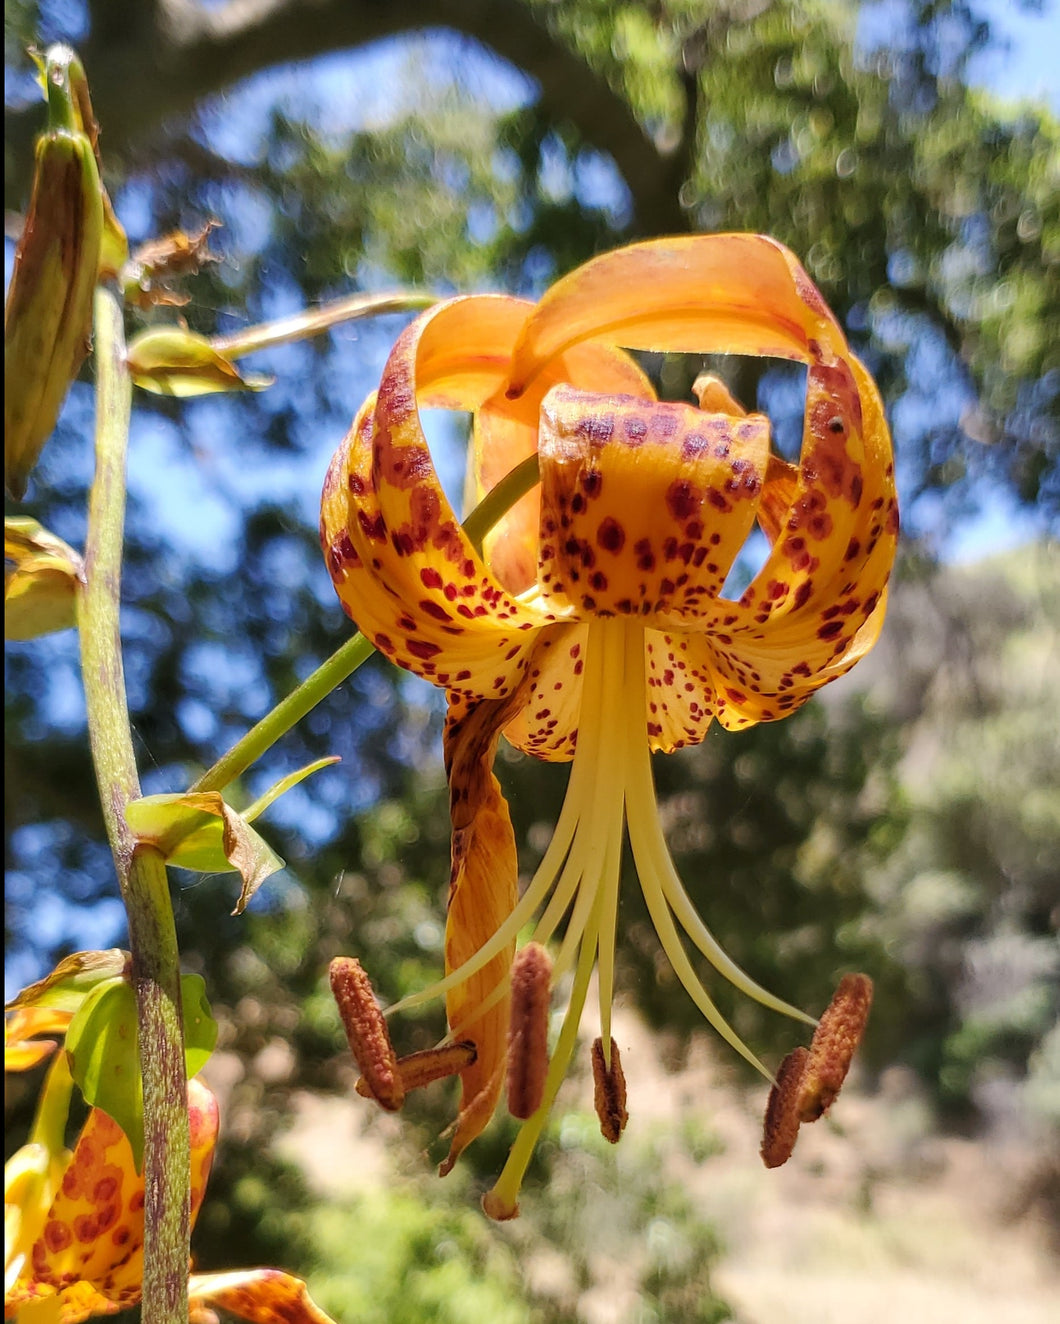 Lilium humboldtii - Humboldt Lily